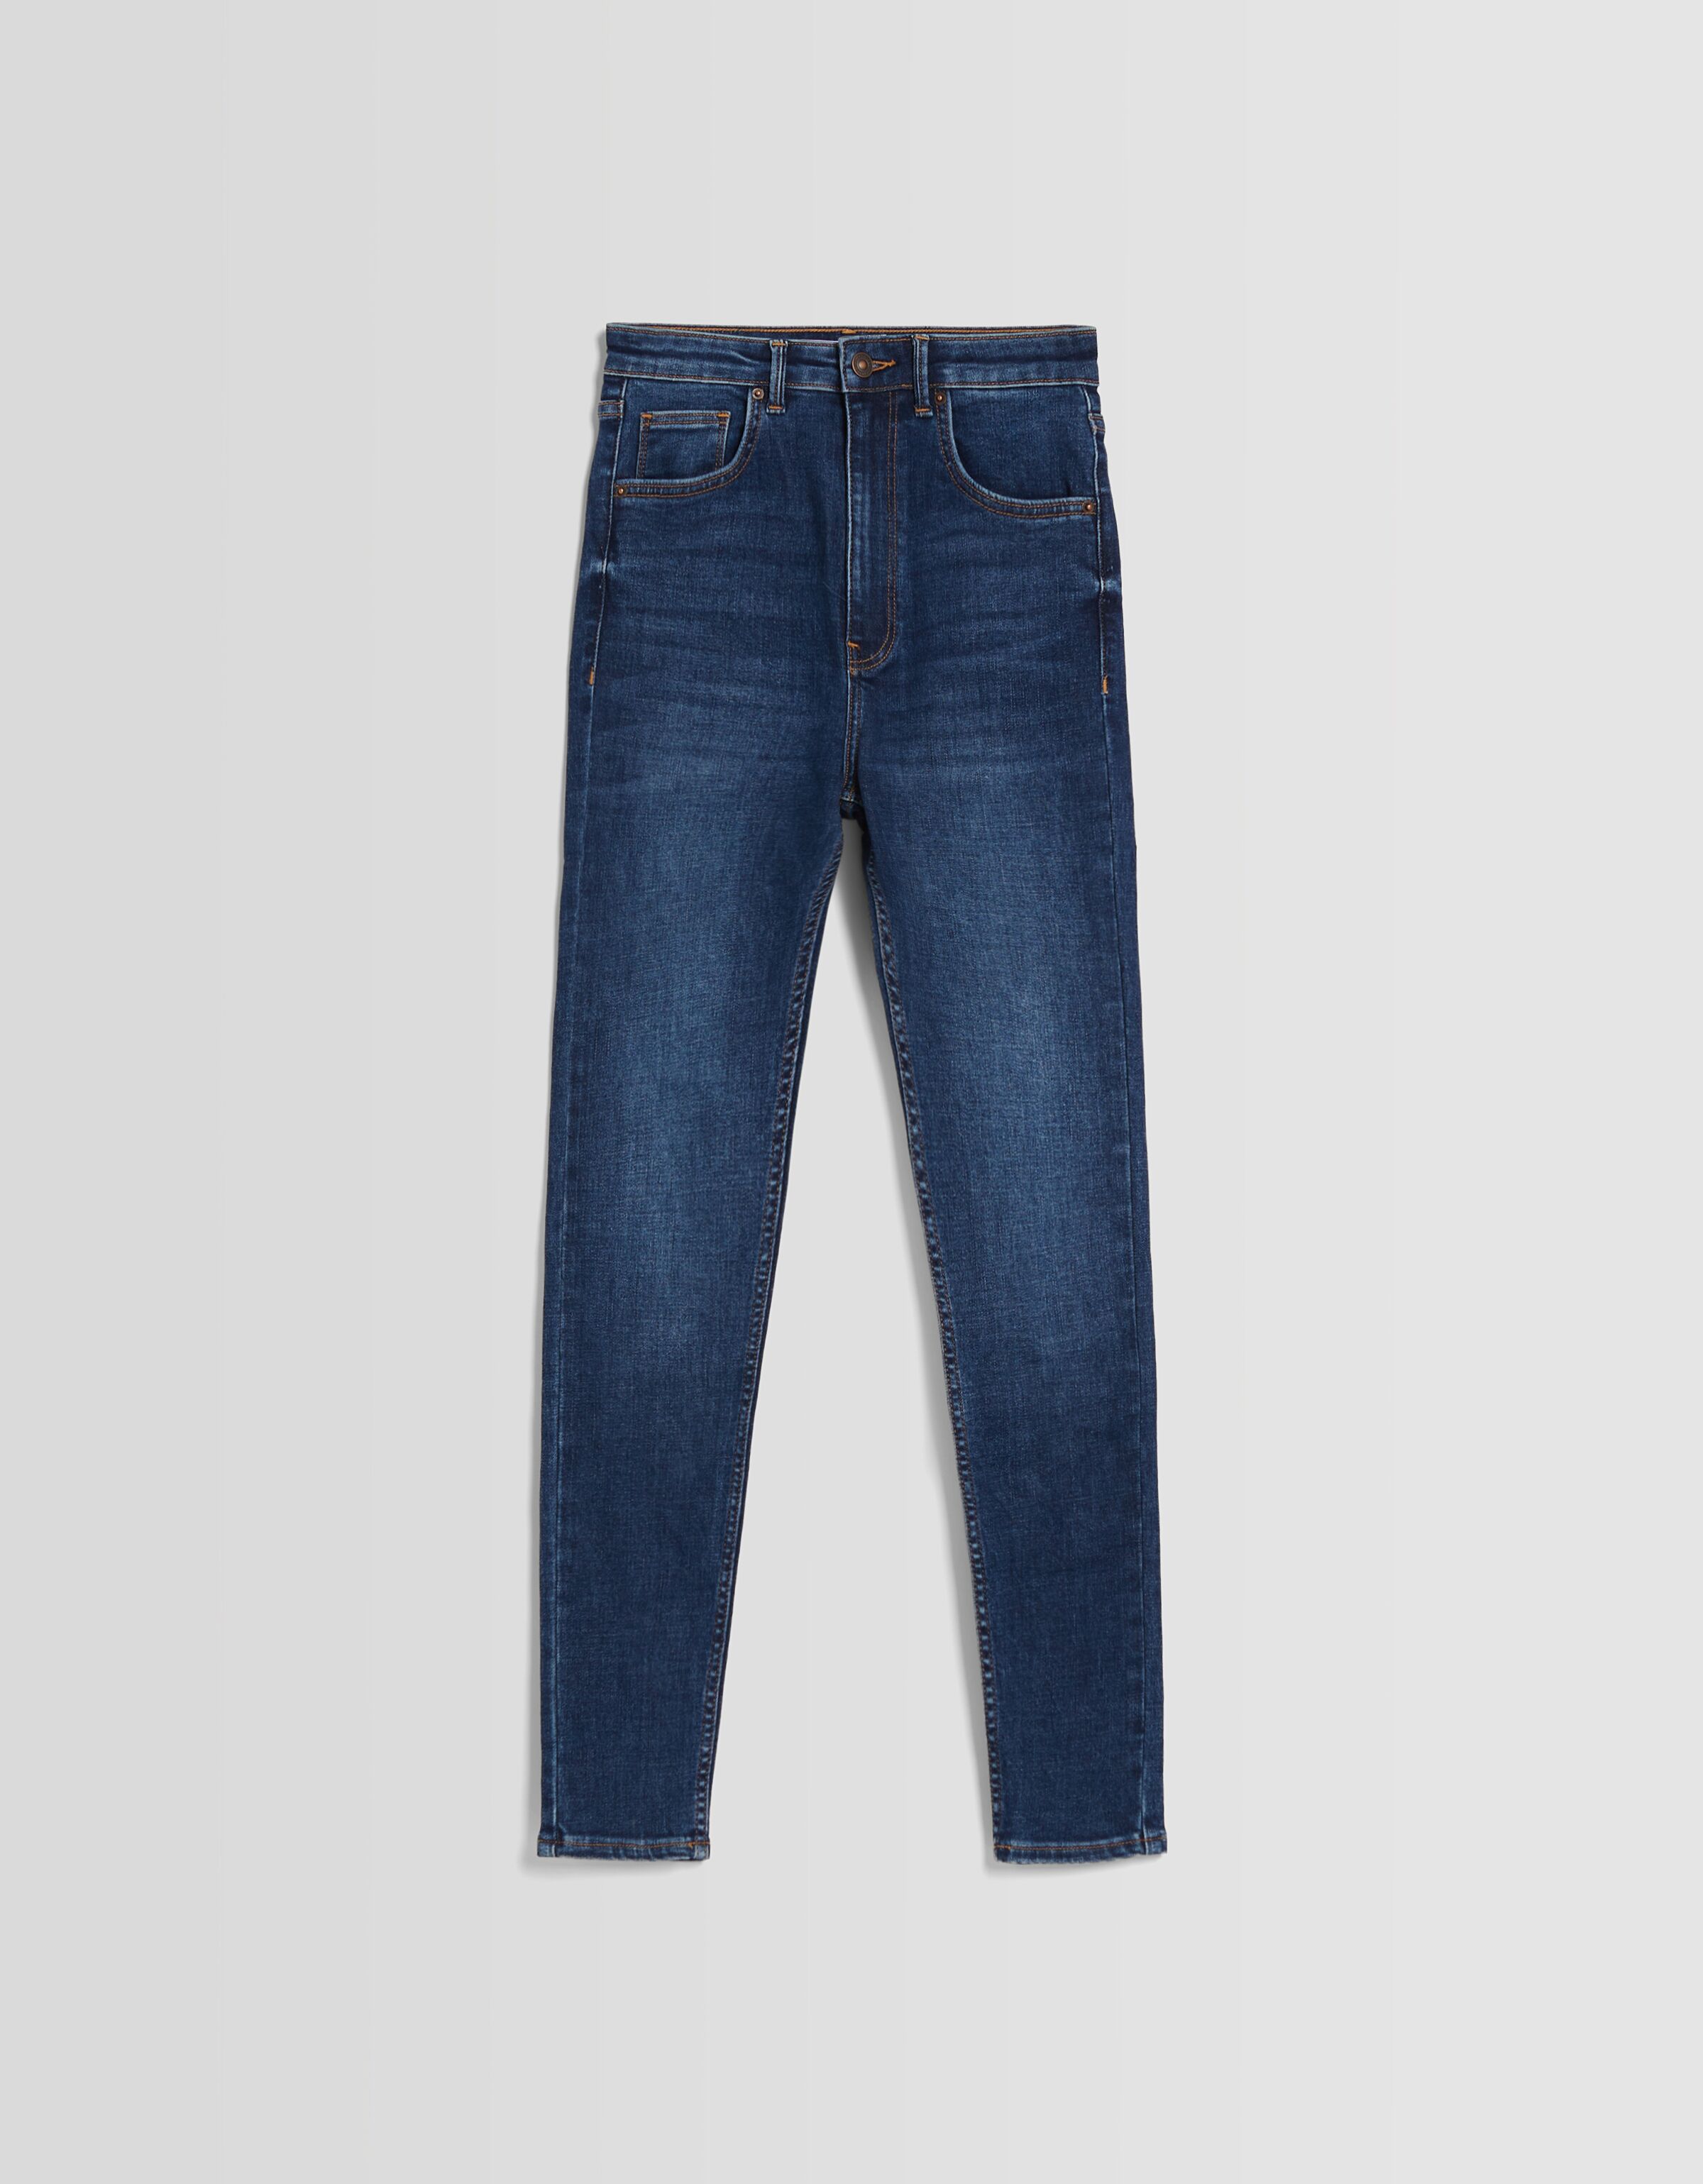 Bershka Jeans for Men | Mercari